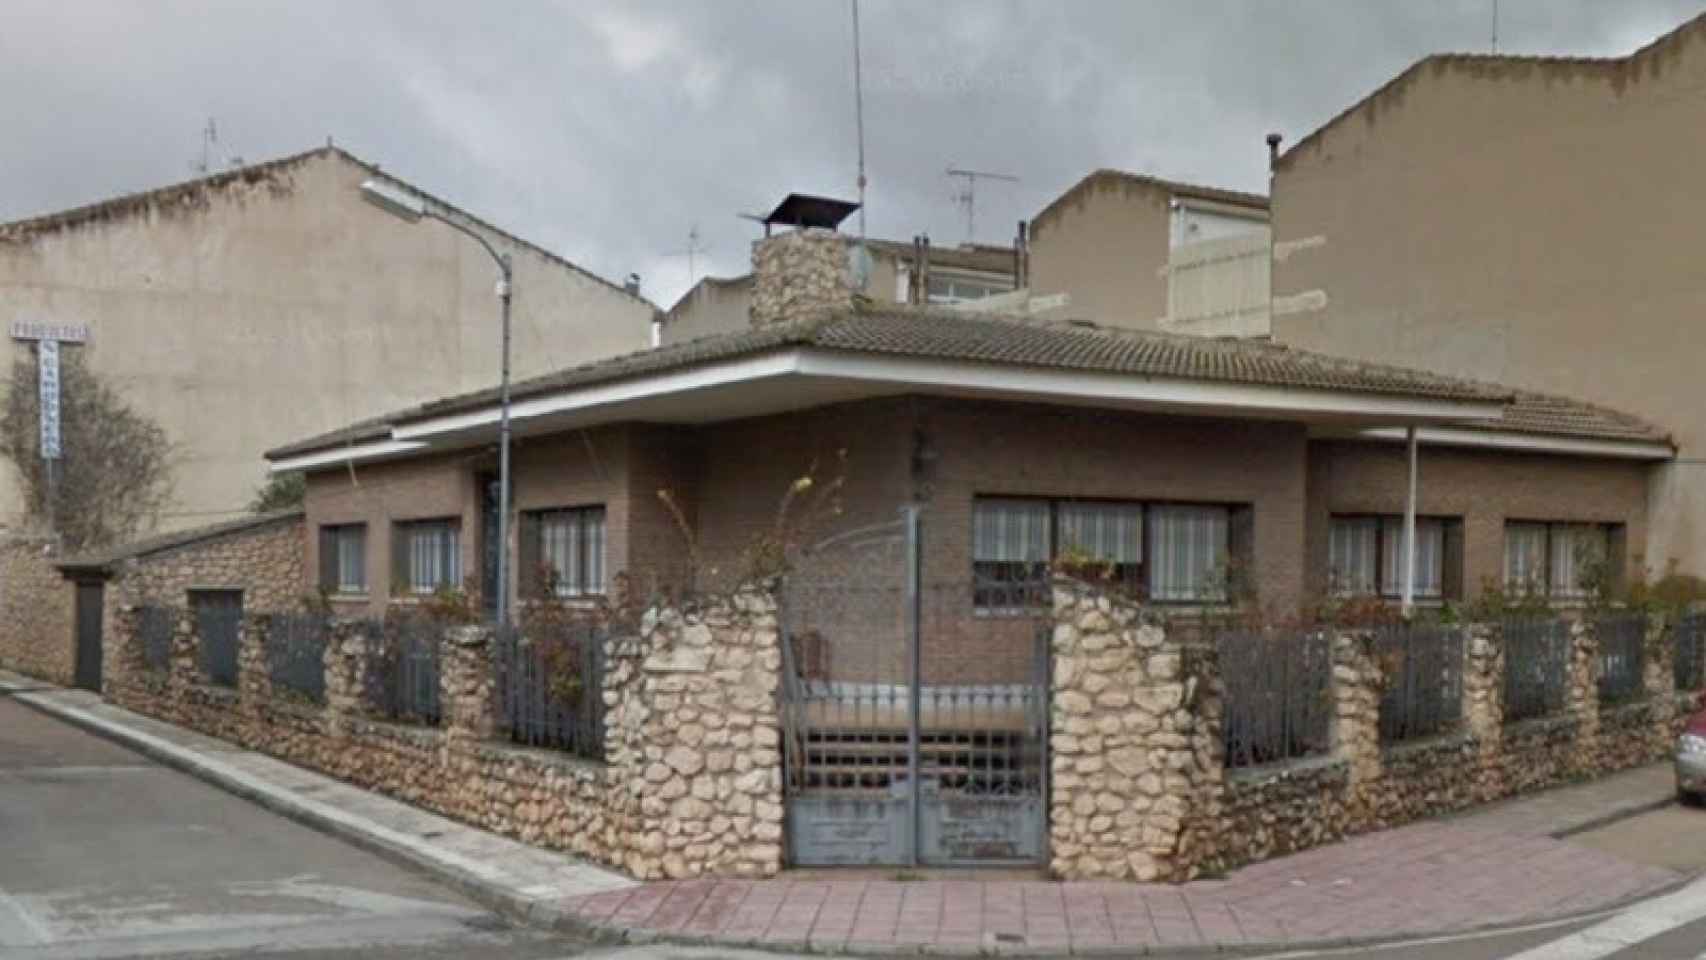 La fachada de la casa donde vivieron los abuelos paternos de Sara Carbonero en Corral de Almaguer.